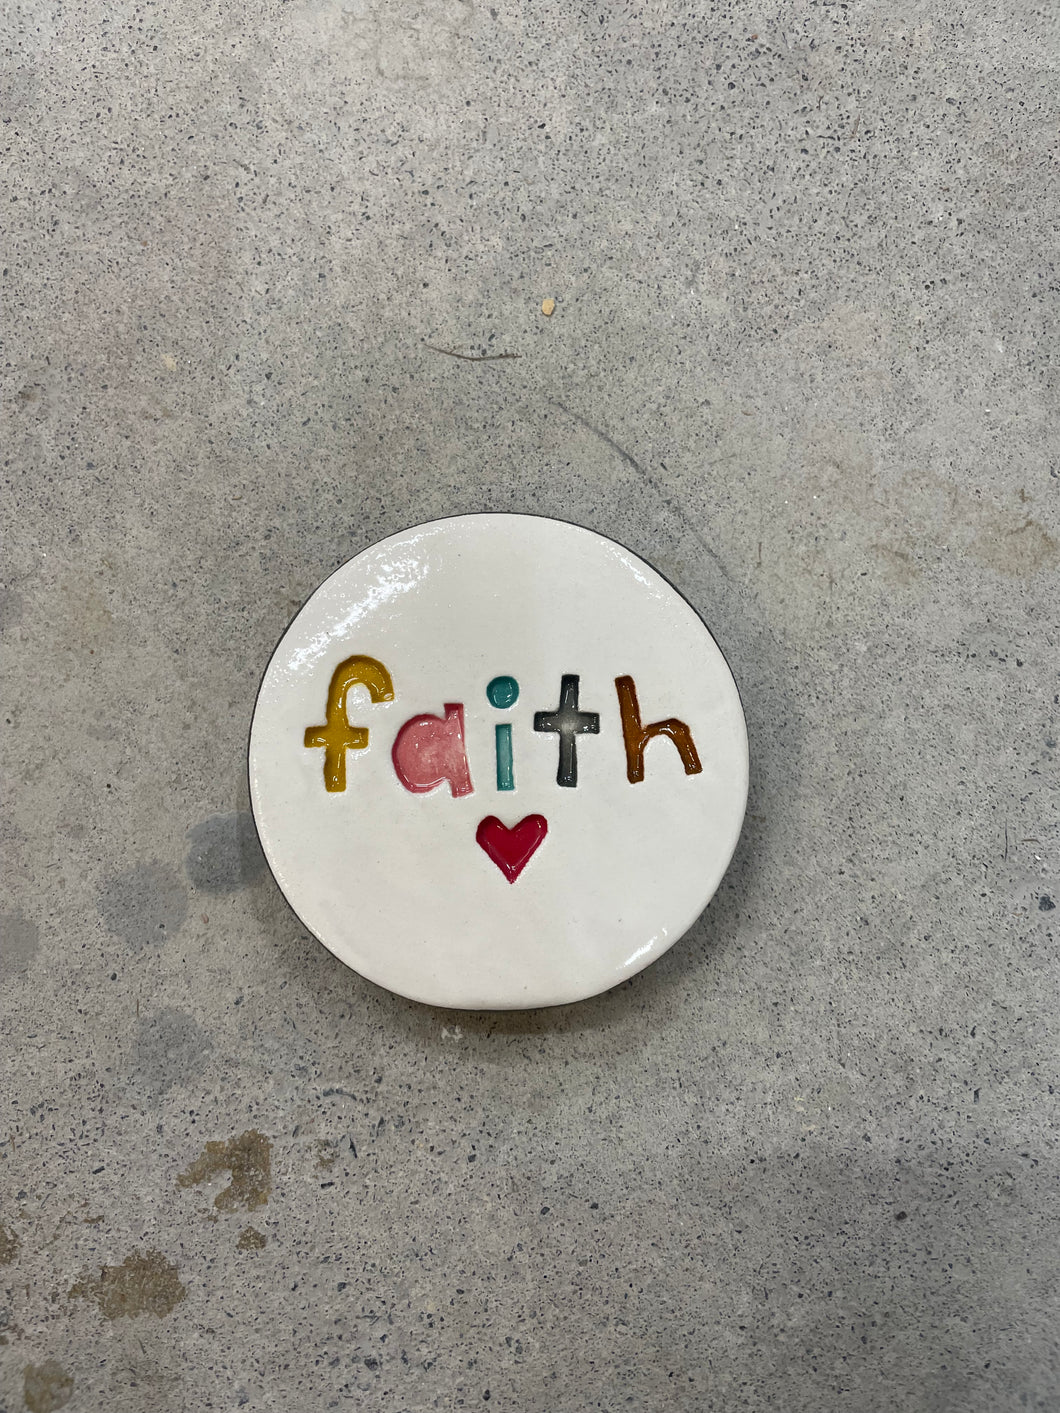 Faith disc